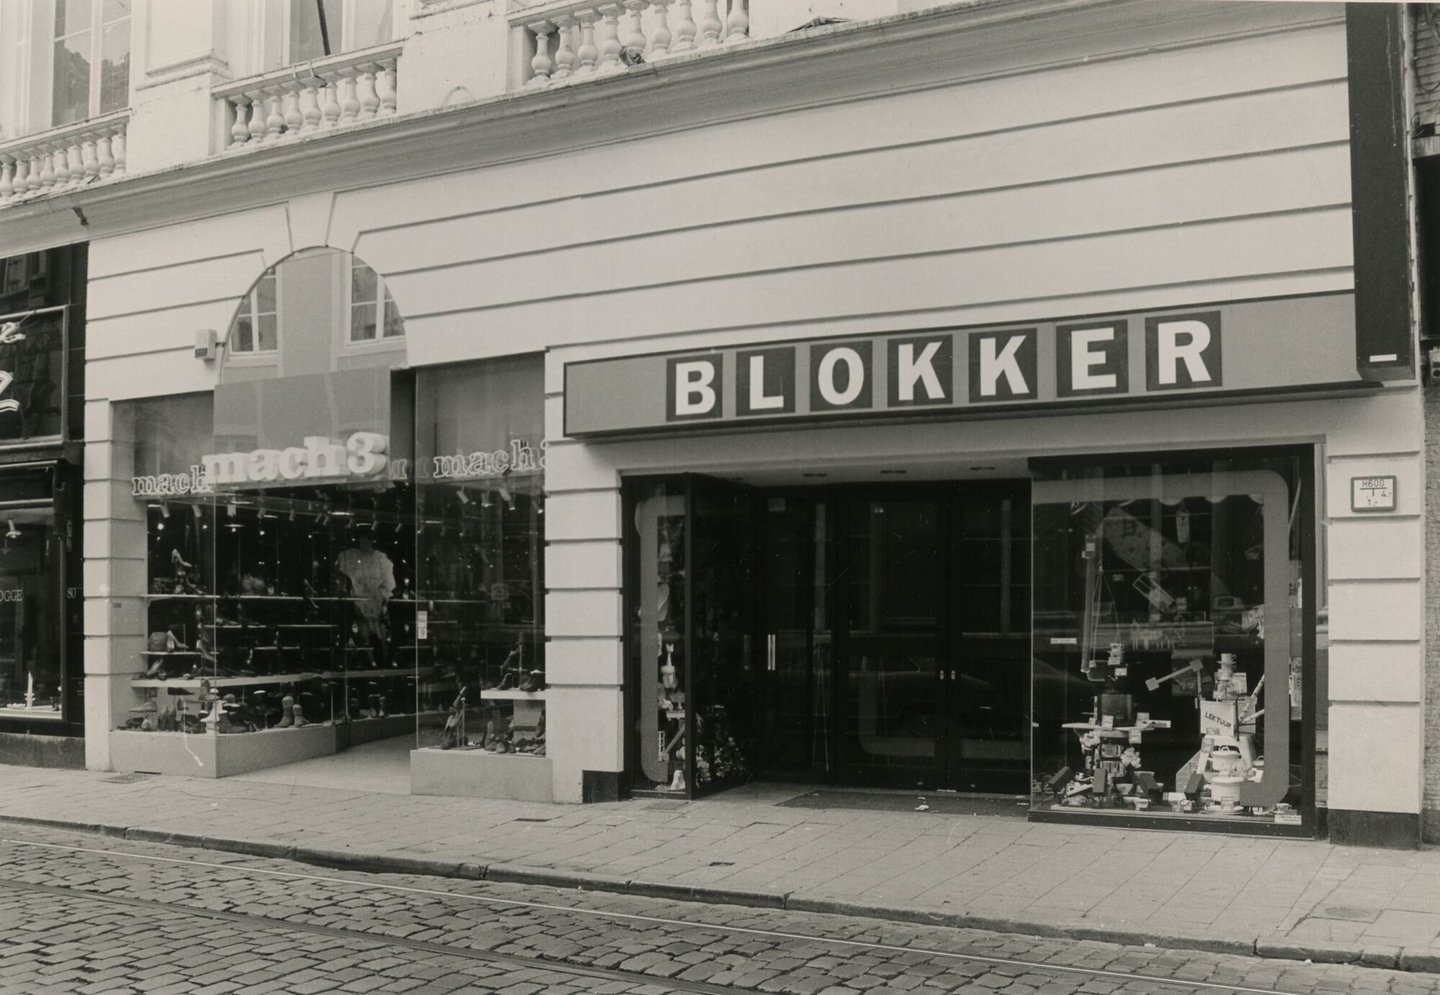 Etalages van schoenwinkel Mach 3 en huishoudwinkel Blokker in Gent